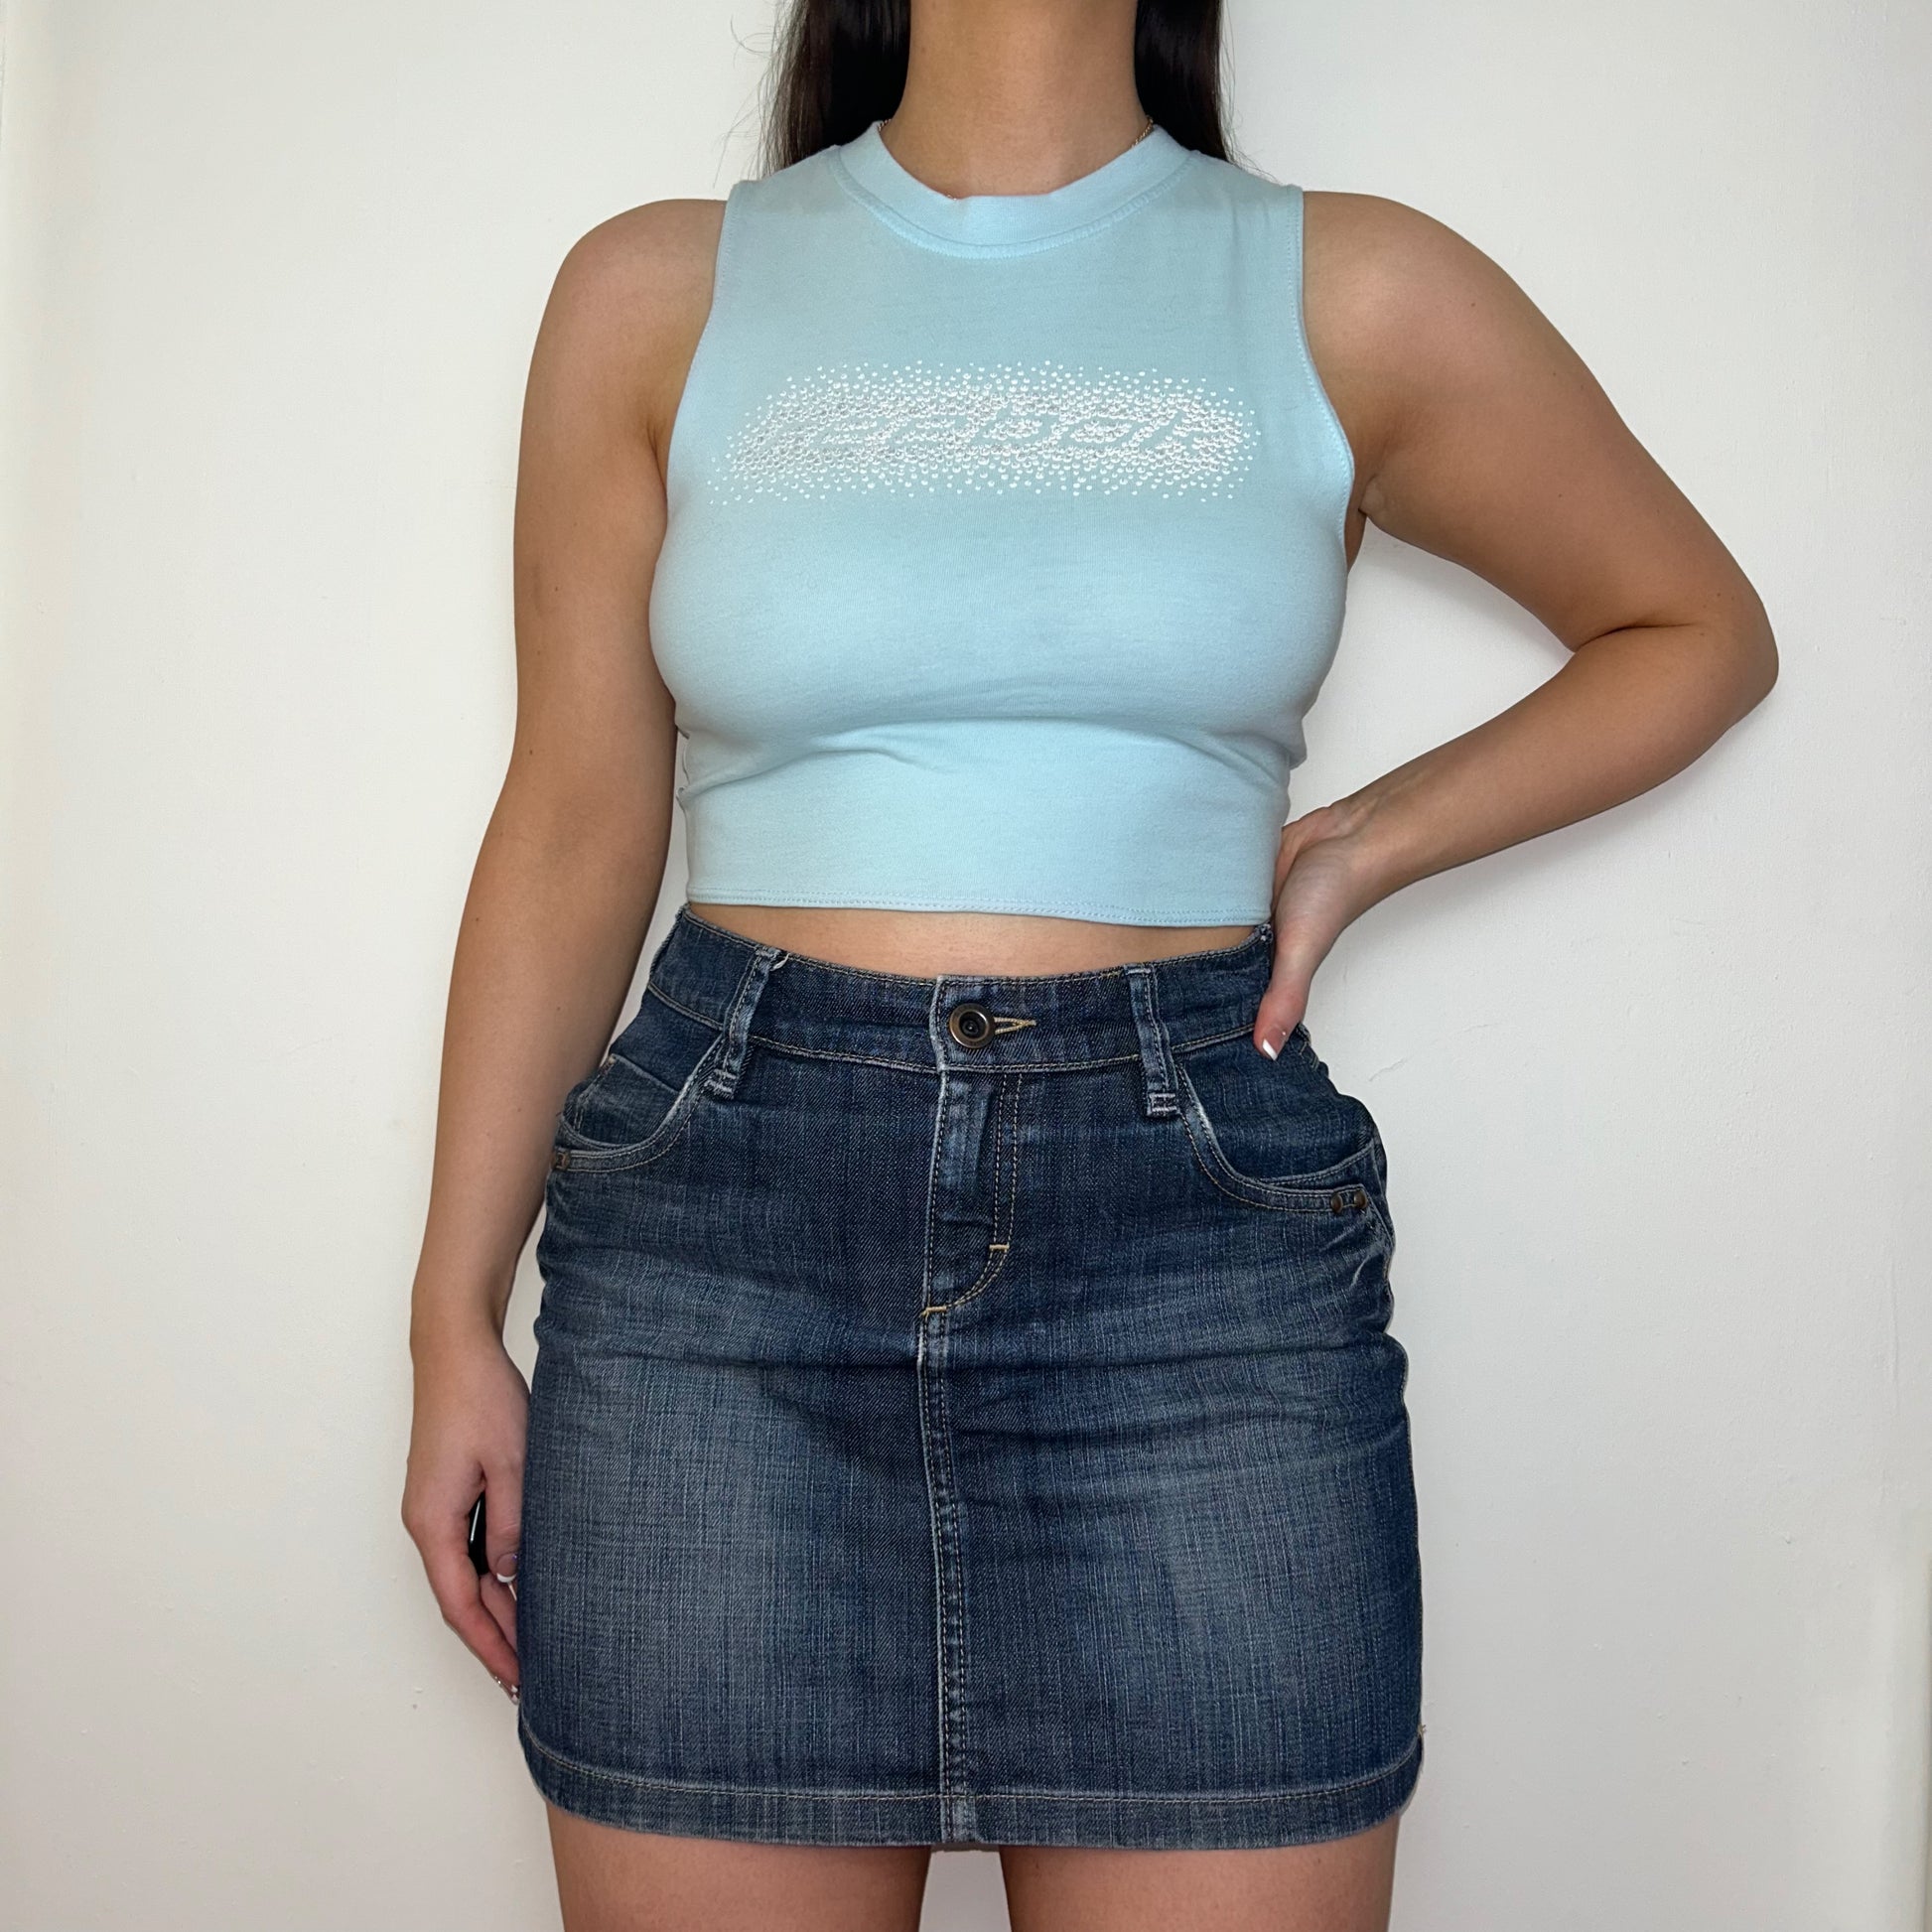 light blue sleeveless crop top with gem reebok logo shown on a model wearing a denim mini skirt